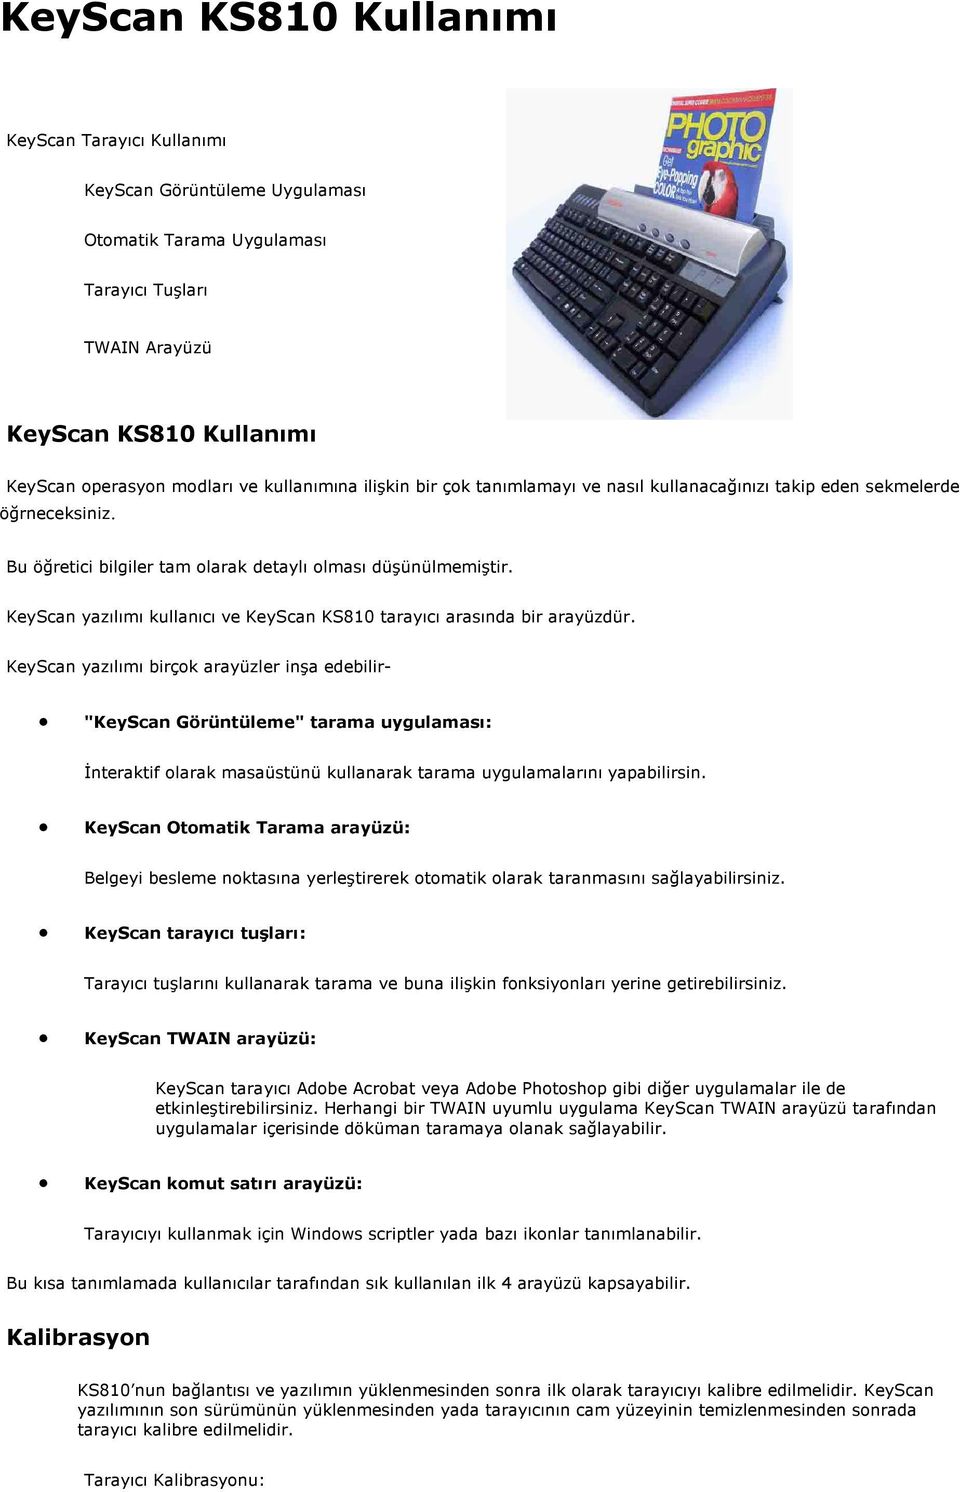 KeyScan yazılımı kullanıcı ve KeyScan KS810 tarayıcı arasında bir arayüzdür.